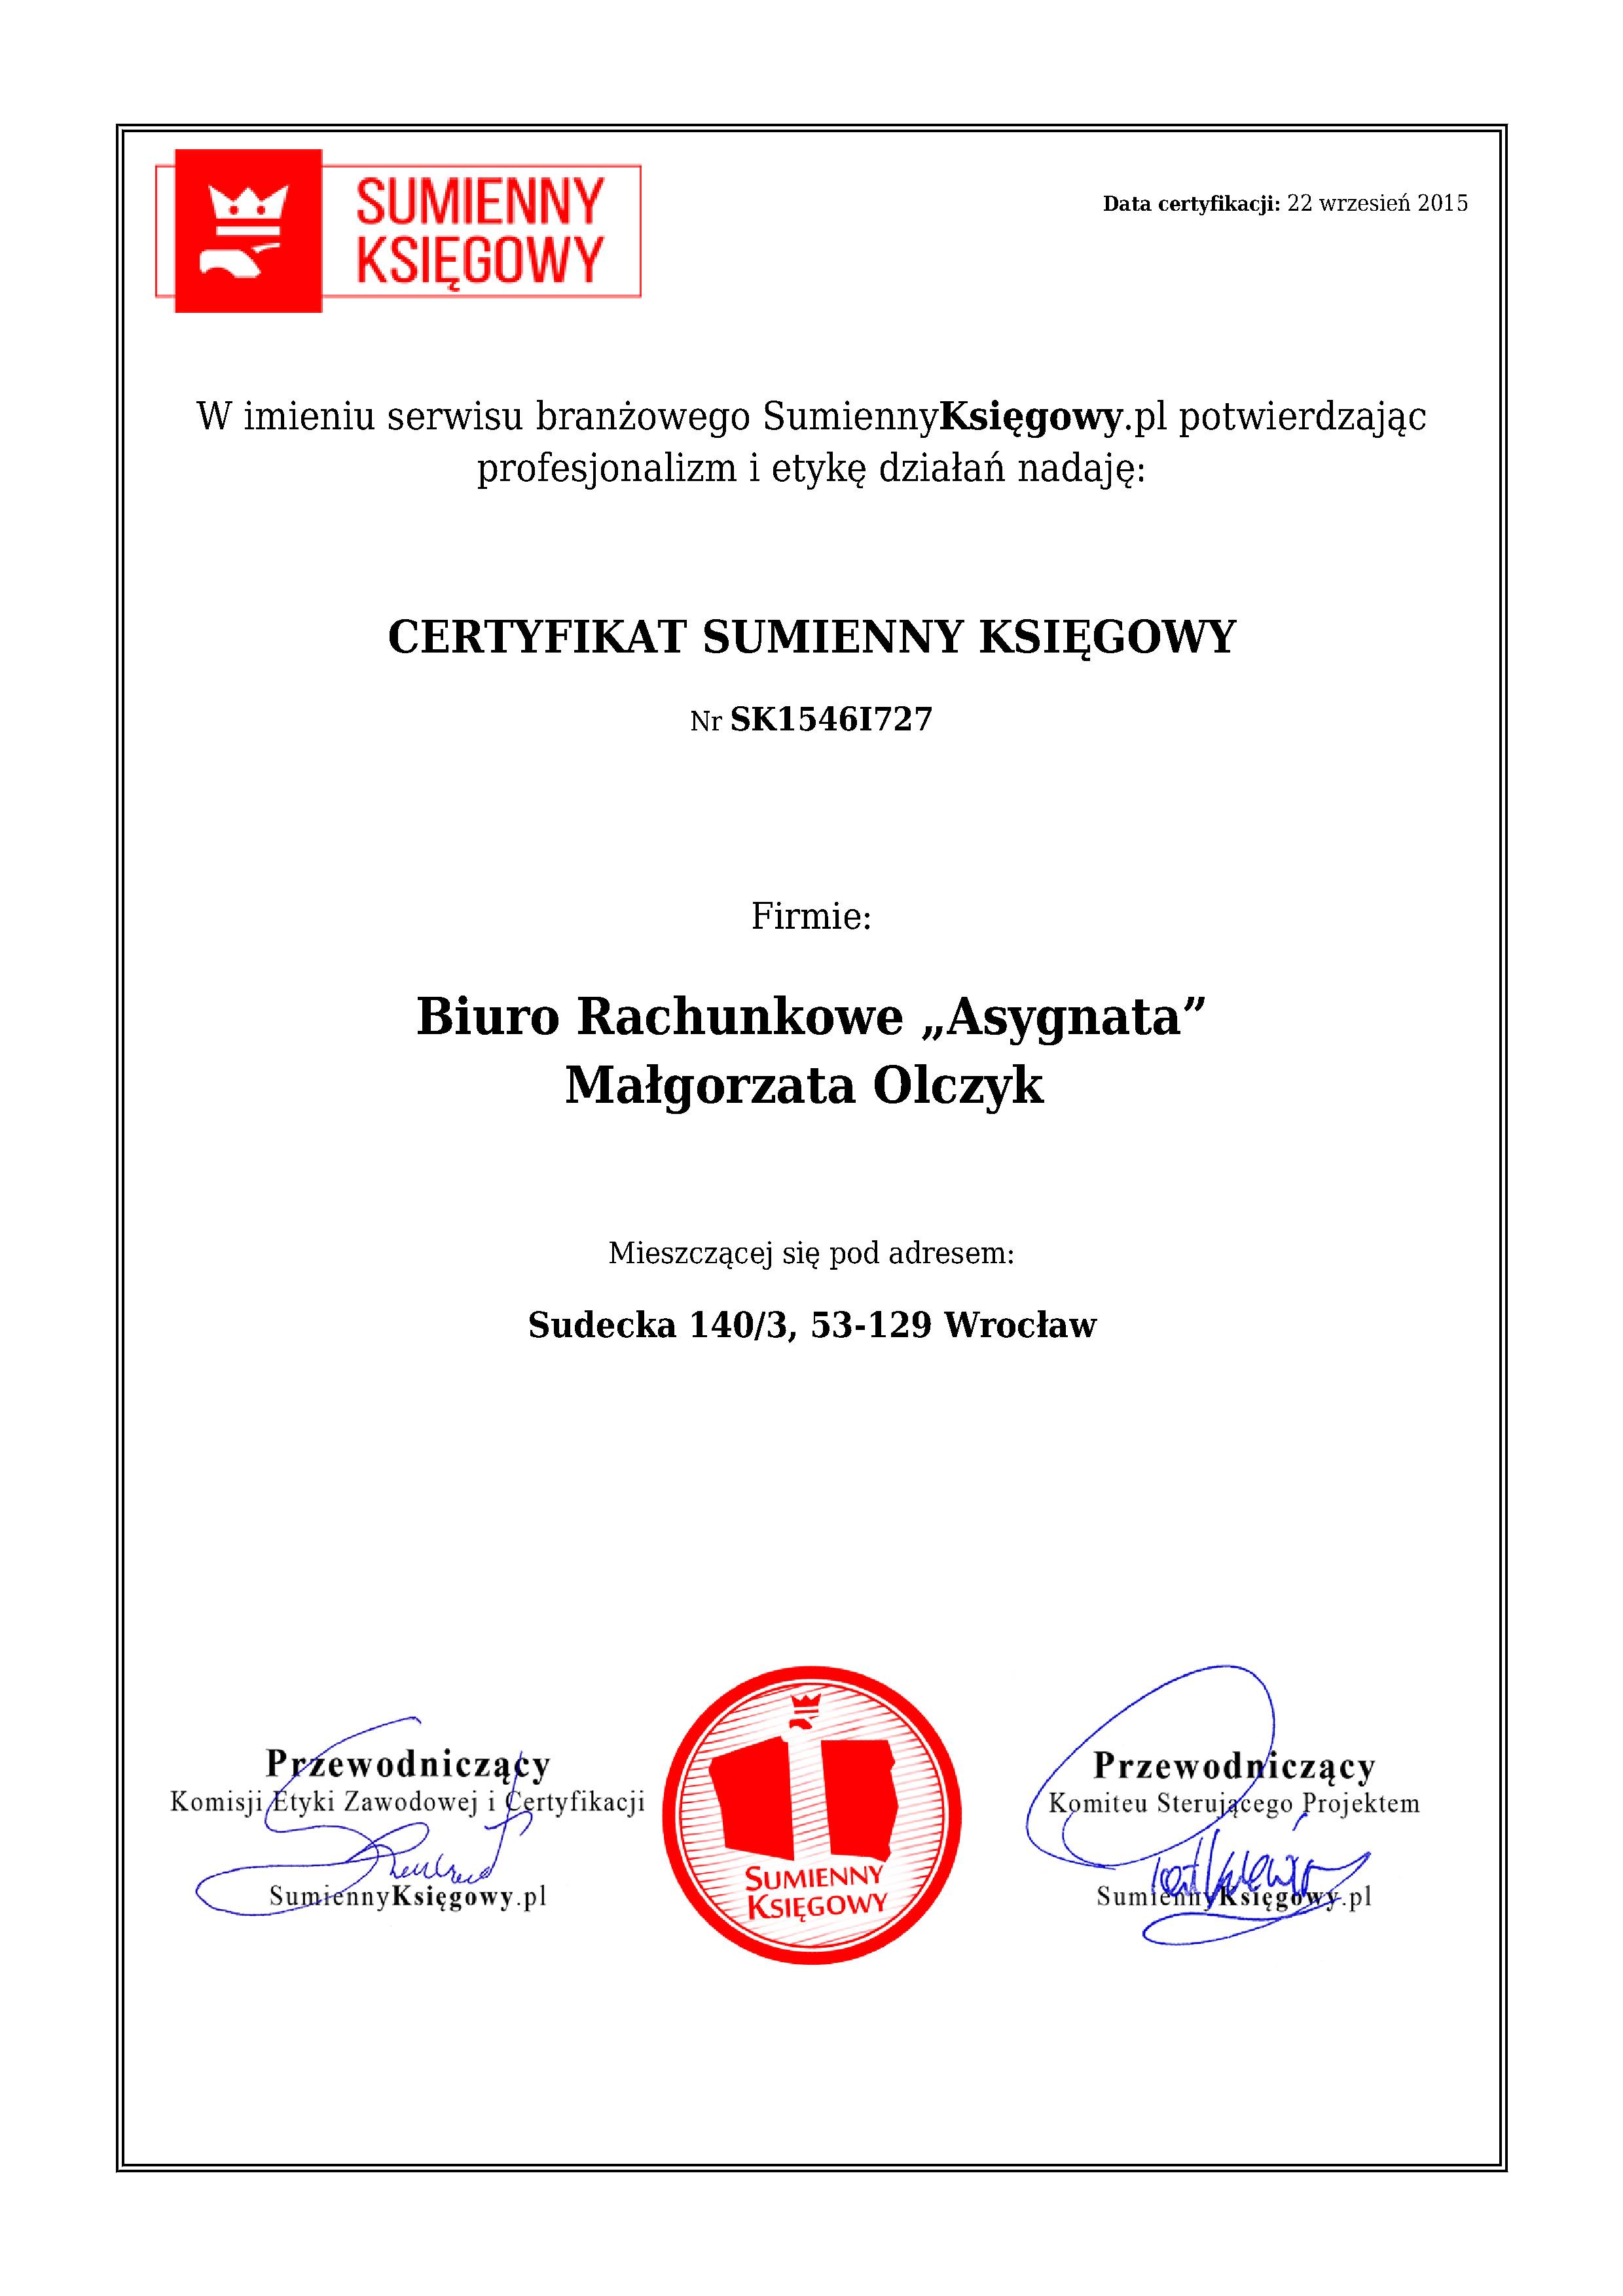 Biuro Rachunkowe „Asygnata” Małgorzata Olczyk  certyfikat 1